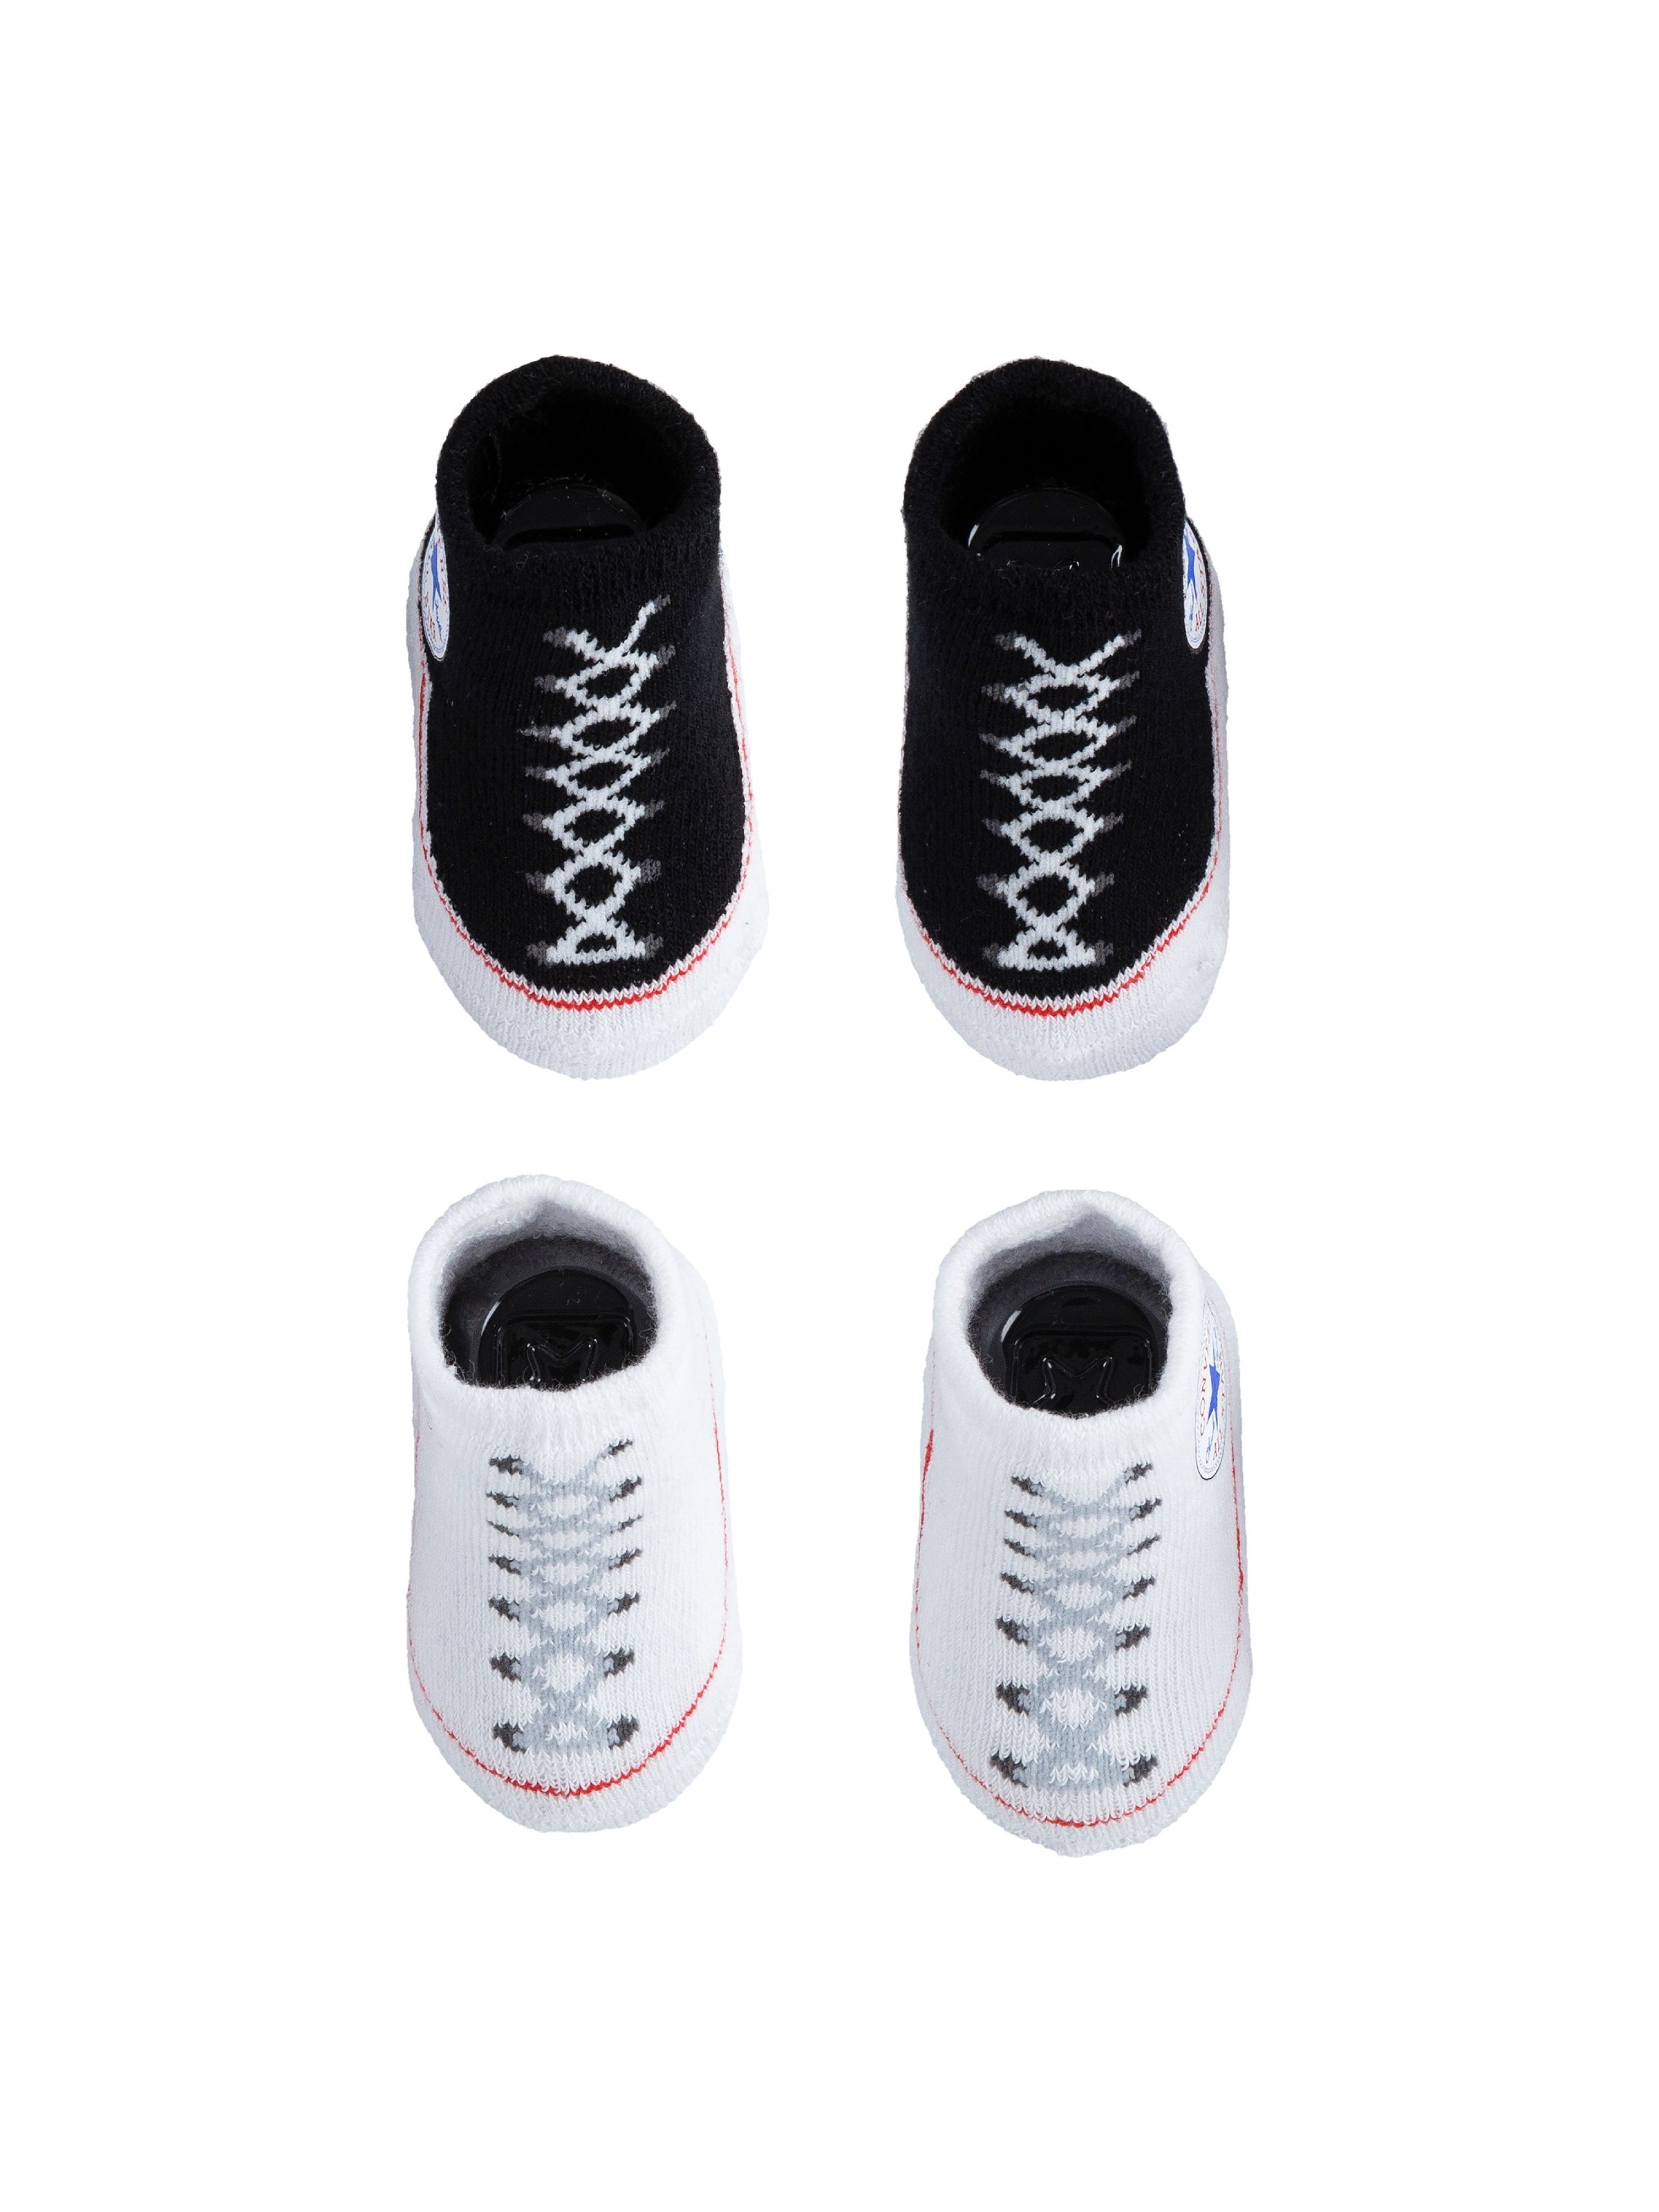 Converse Piece | 2 Famous Footwear Infant Bootie Set